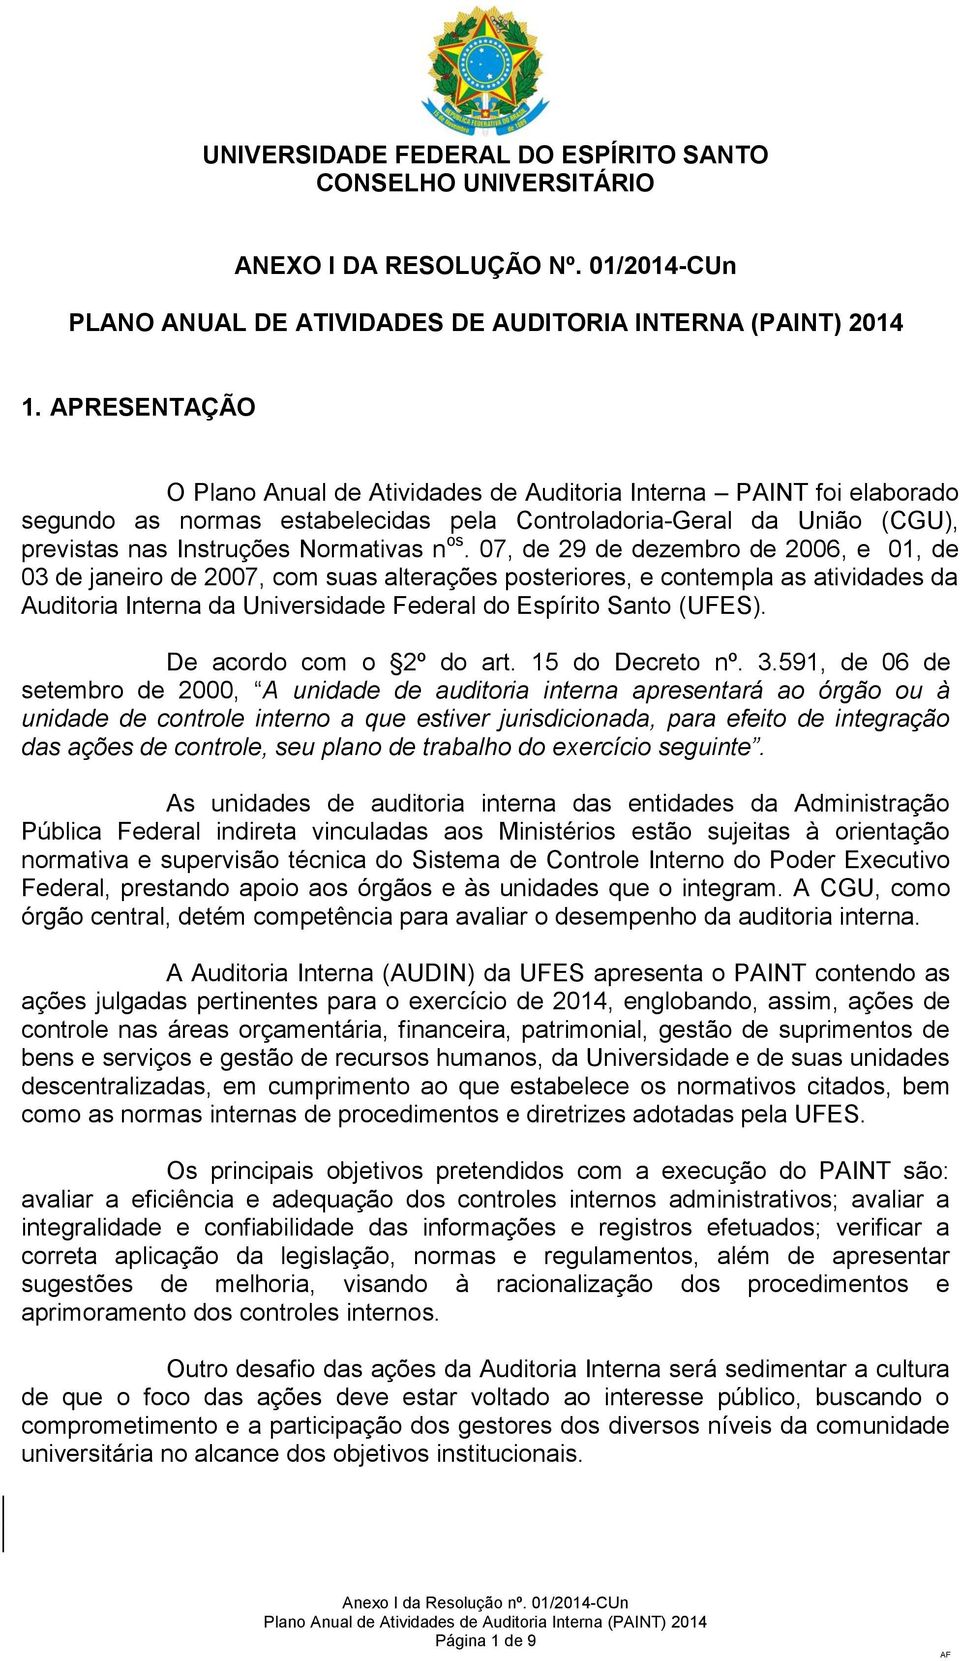 07, de 29 de dezembro de 2006, e 01, de 03 de janeiro de 2007, com suas alterações posteriores, e contempla as atividades da Auditoria Interna da Universidade Federal do Espírito Santo (UFES).